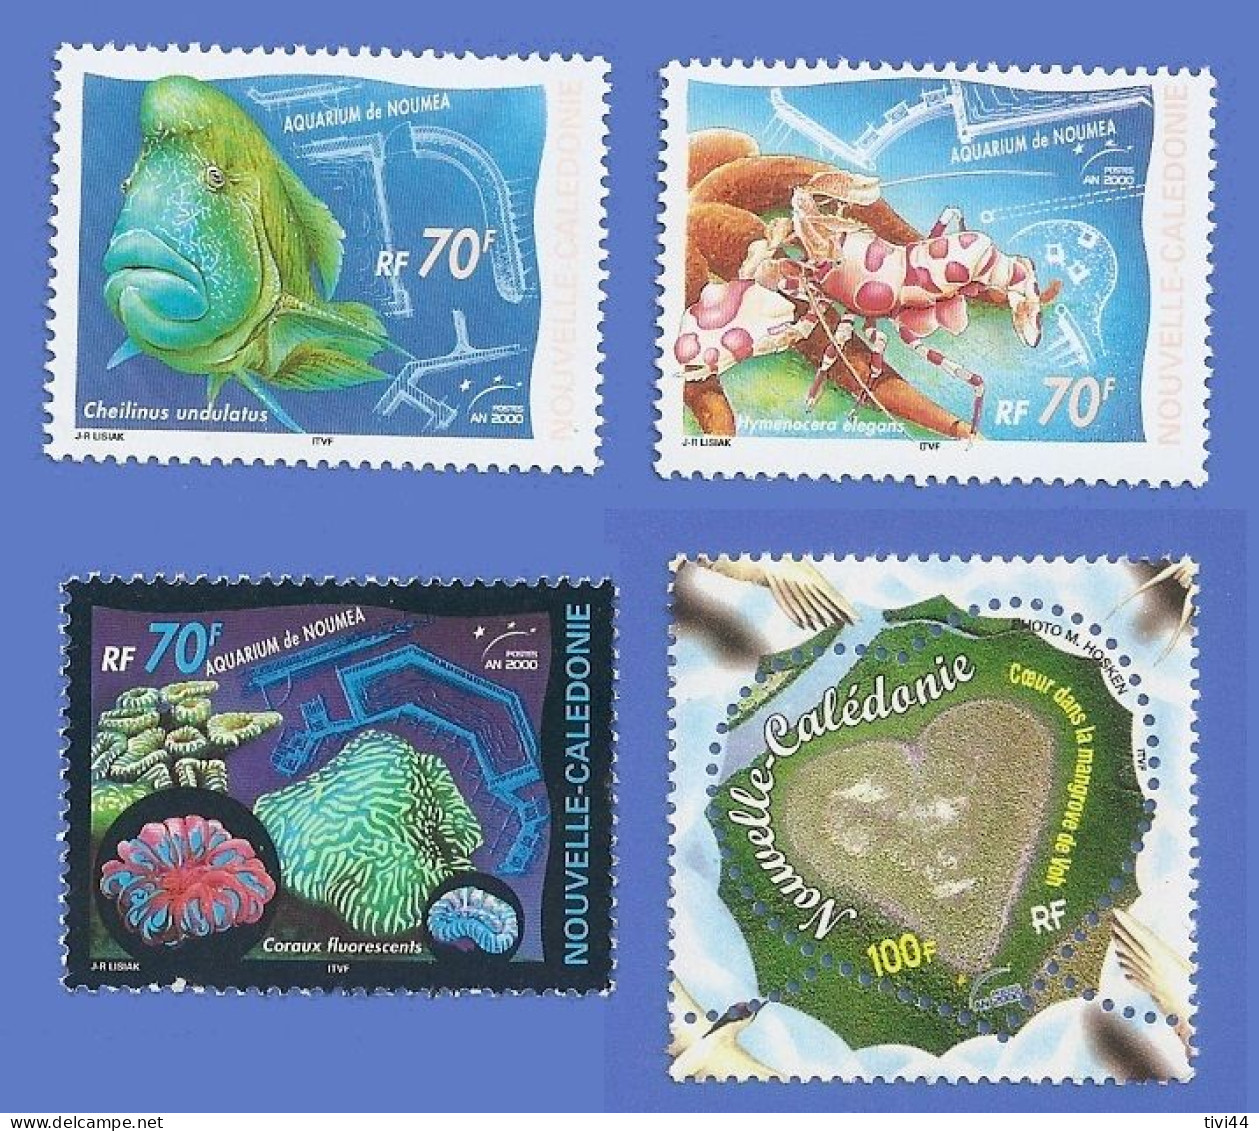 NOUVELLE CALÉDONIE 815 + 816 + 817 + 818 NEUFS ** AQUARIUM DE NOUMÉA + MANGROVE DE VOH - Unused Stamps